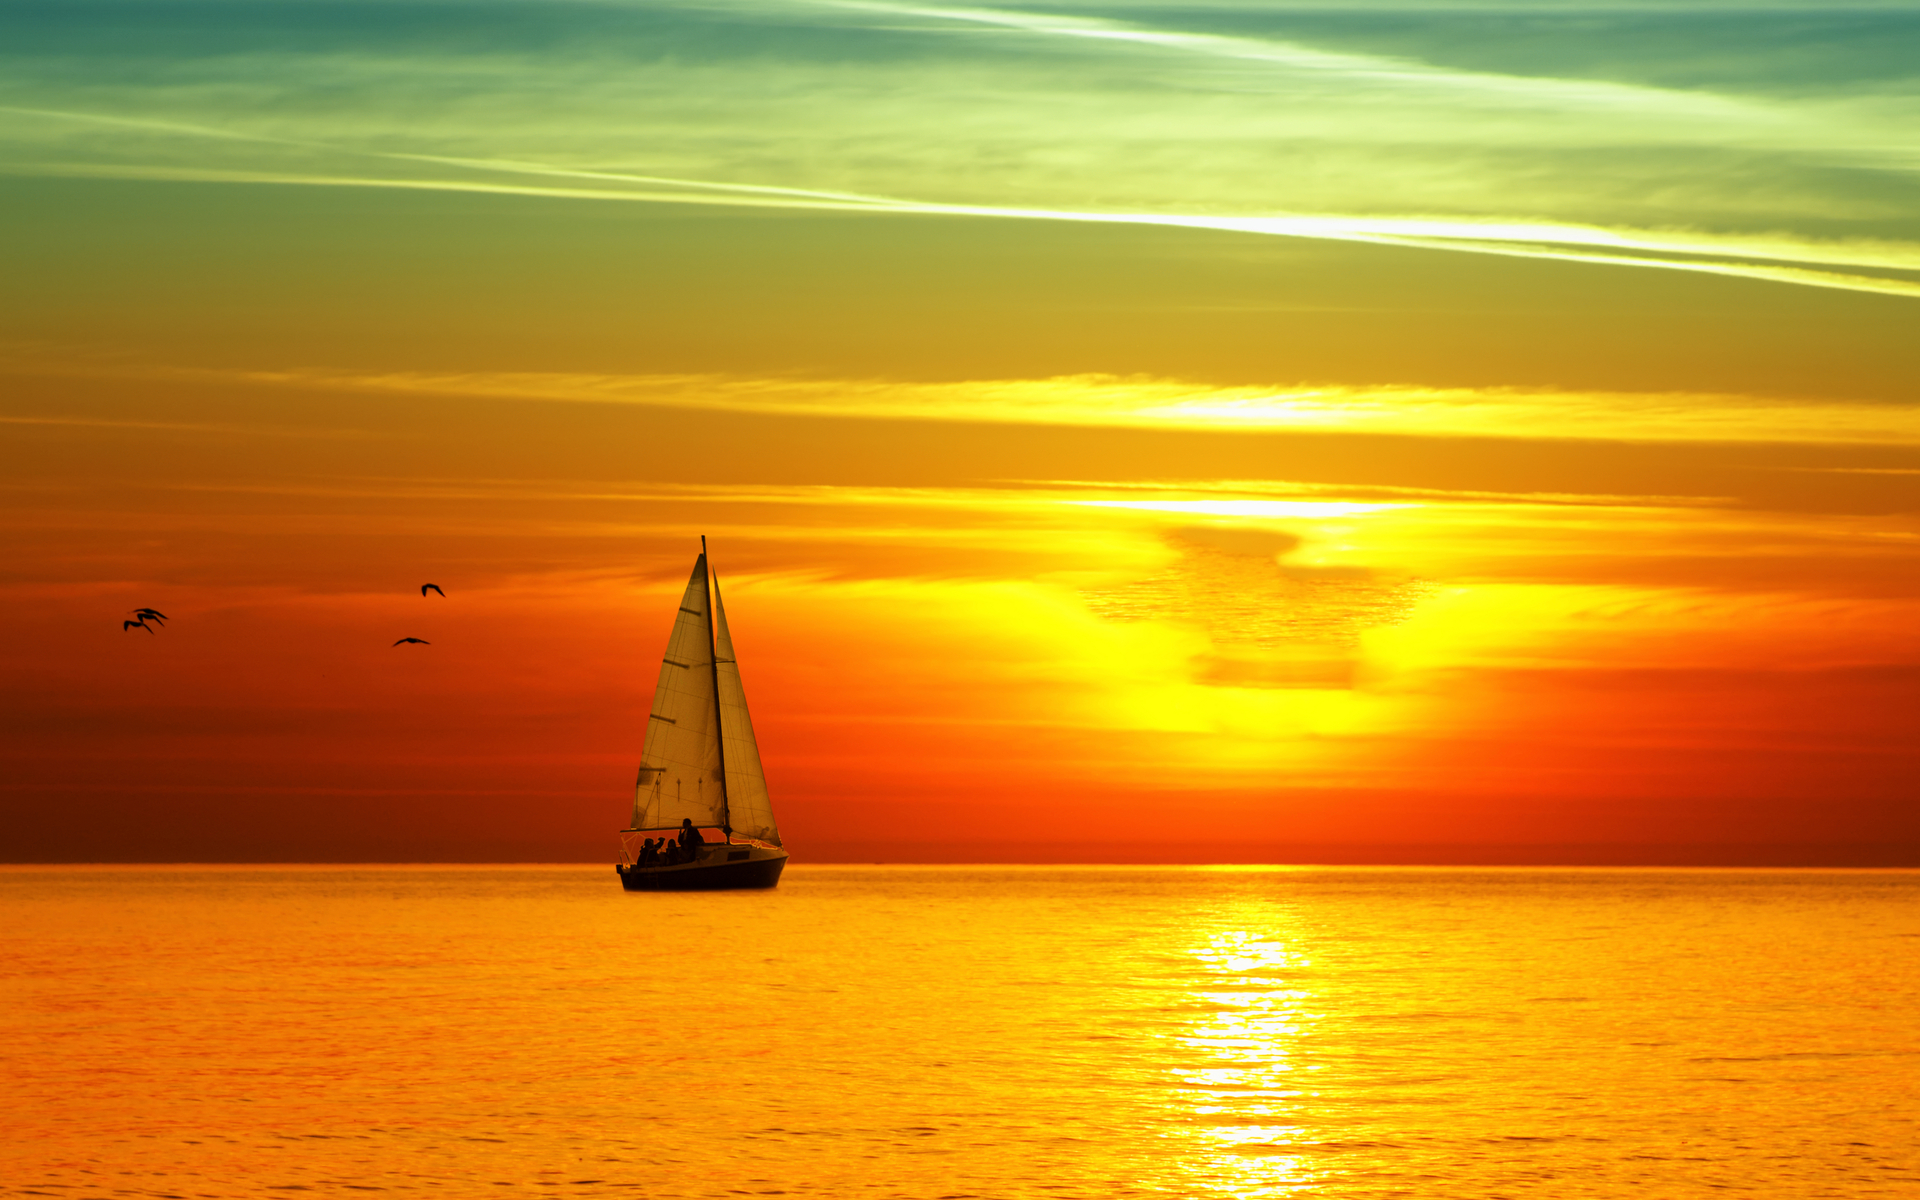 latest sailboat sunset hd wallpapers new fresh widescreen desktop ...